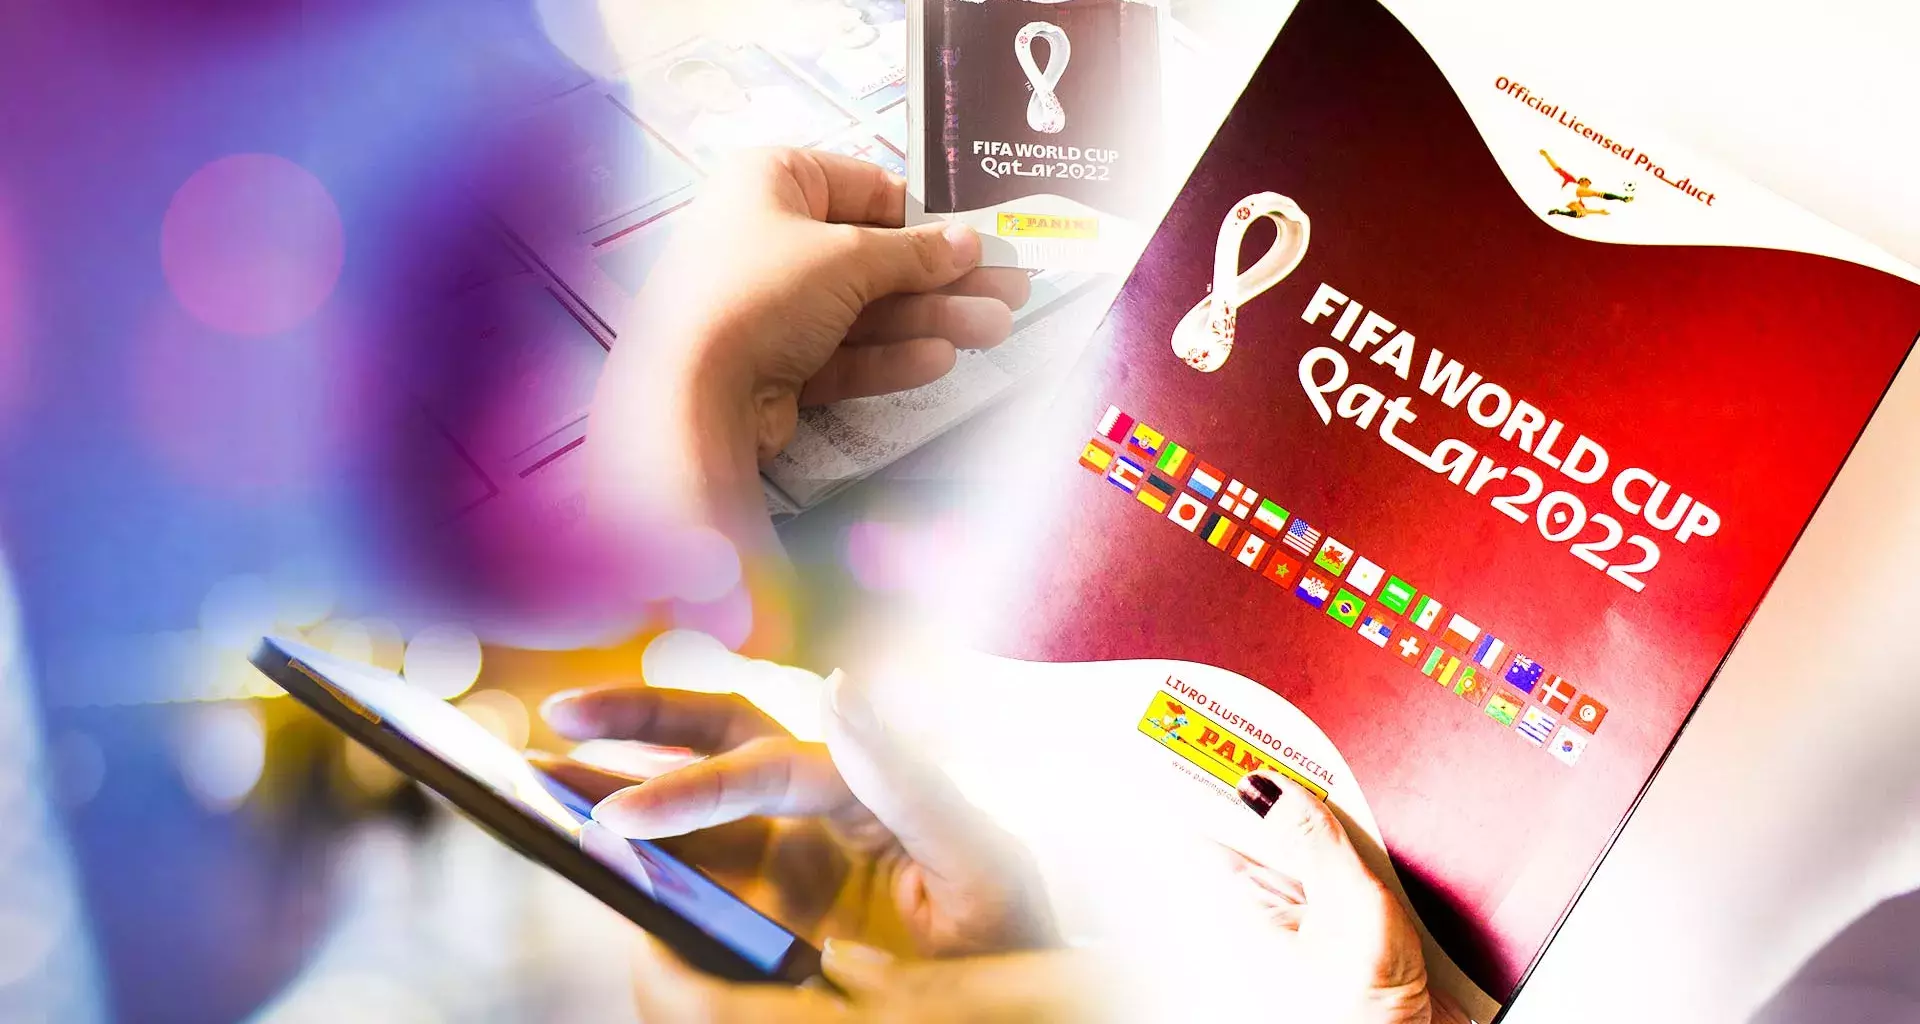 Egresados del Tec crearon una app para facilitar el llenado del álbum mundialista de Qatar 2022 de la empresa Panini